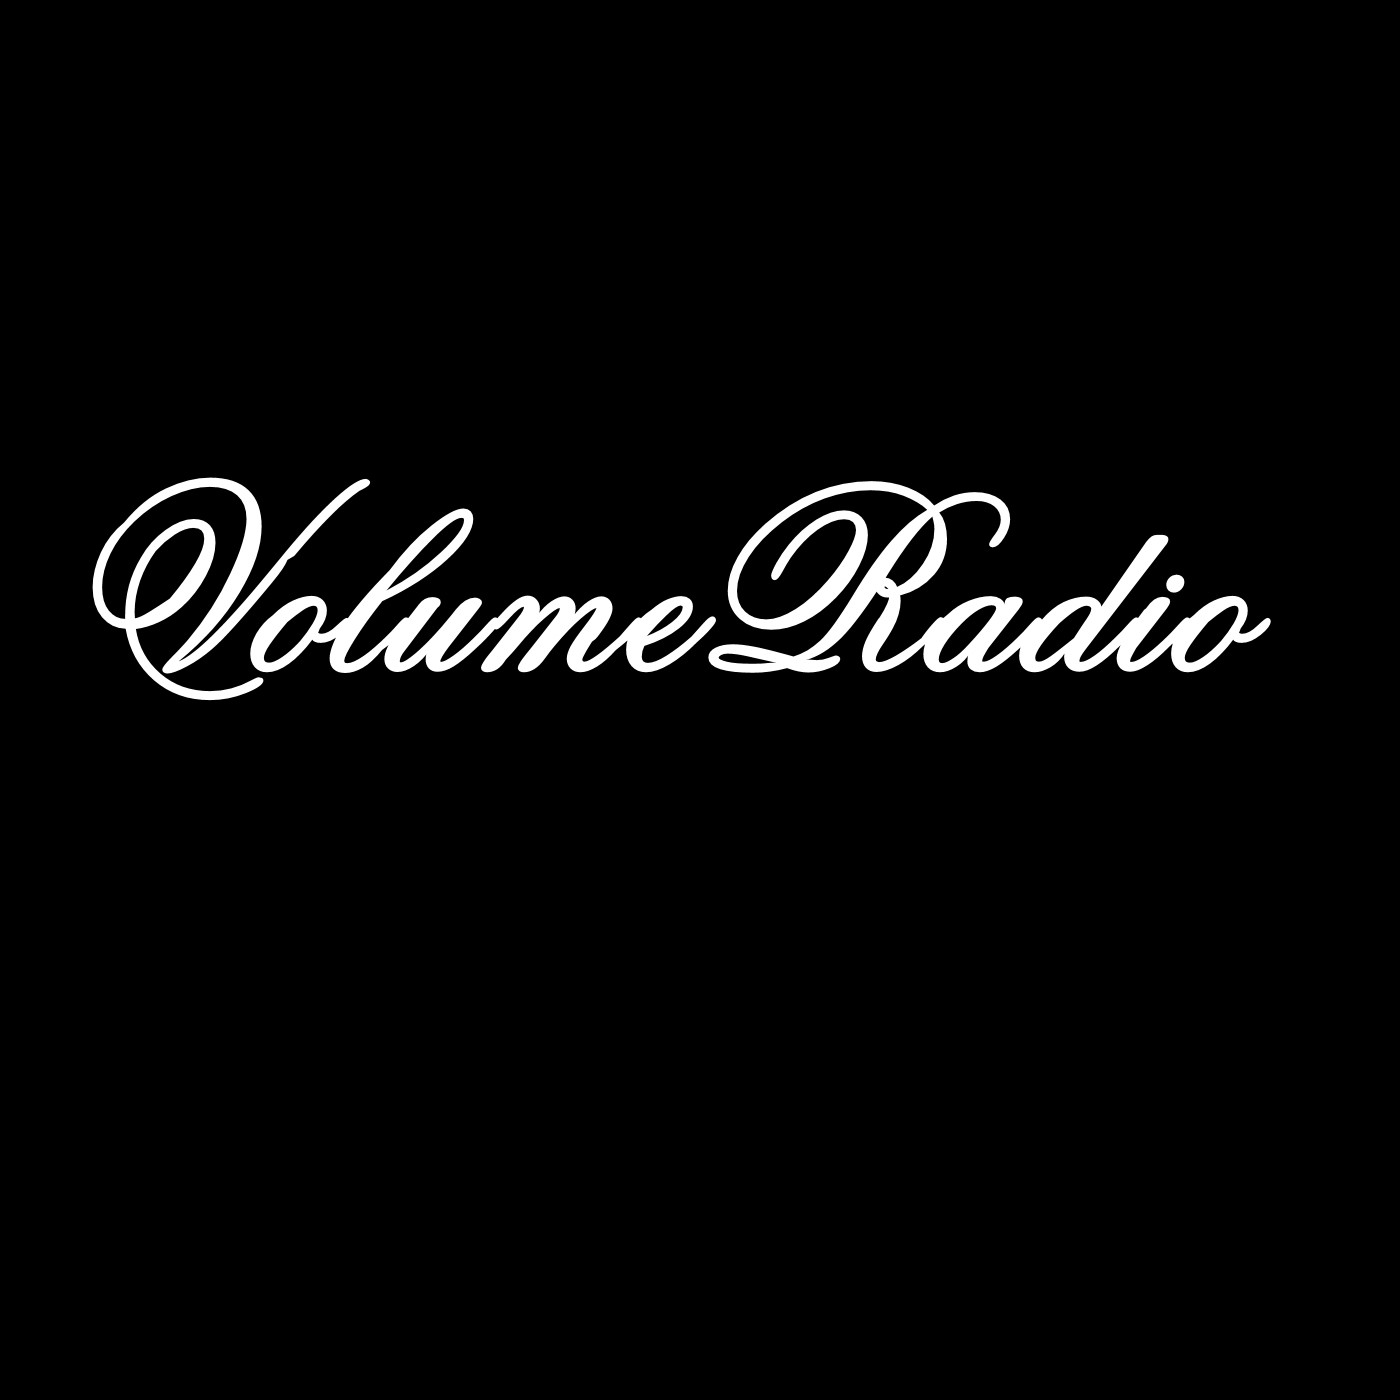 VolumeRadio